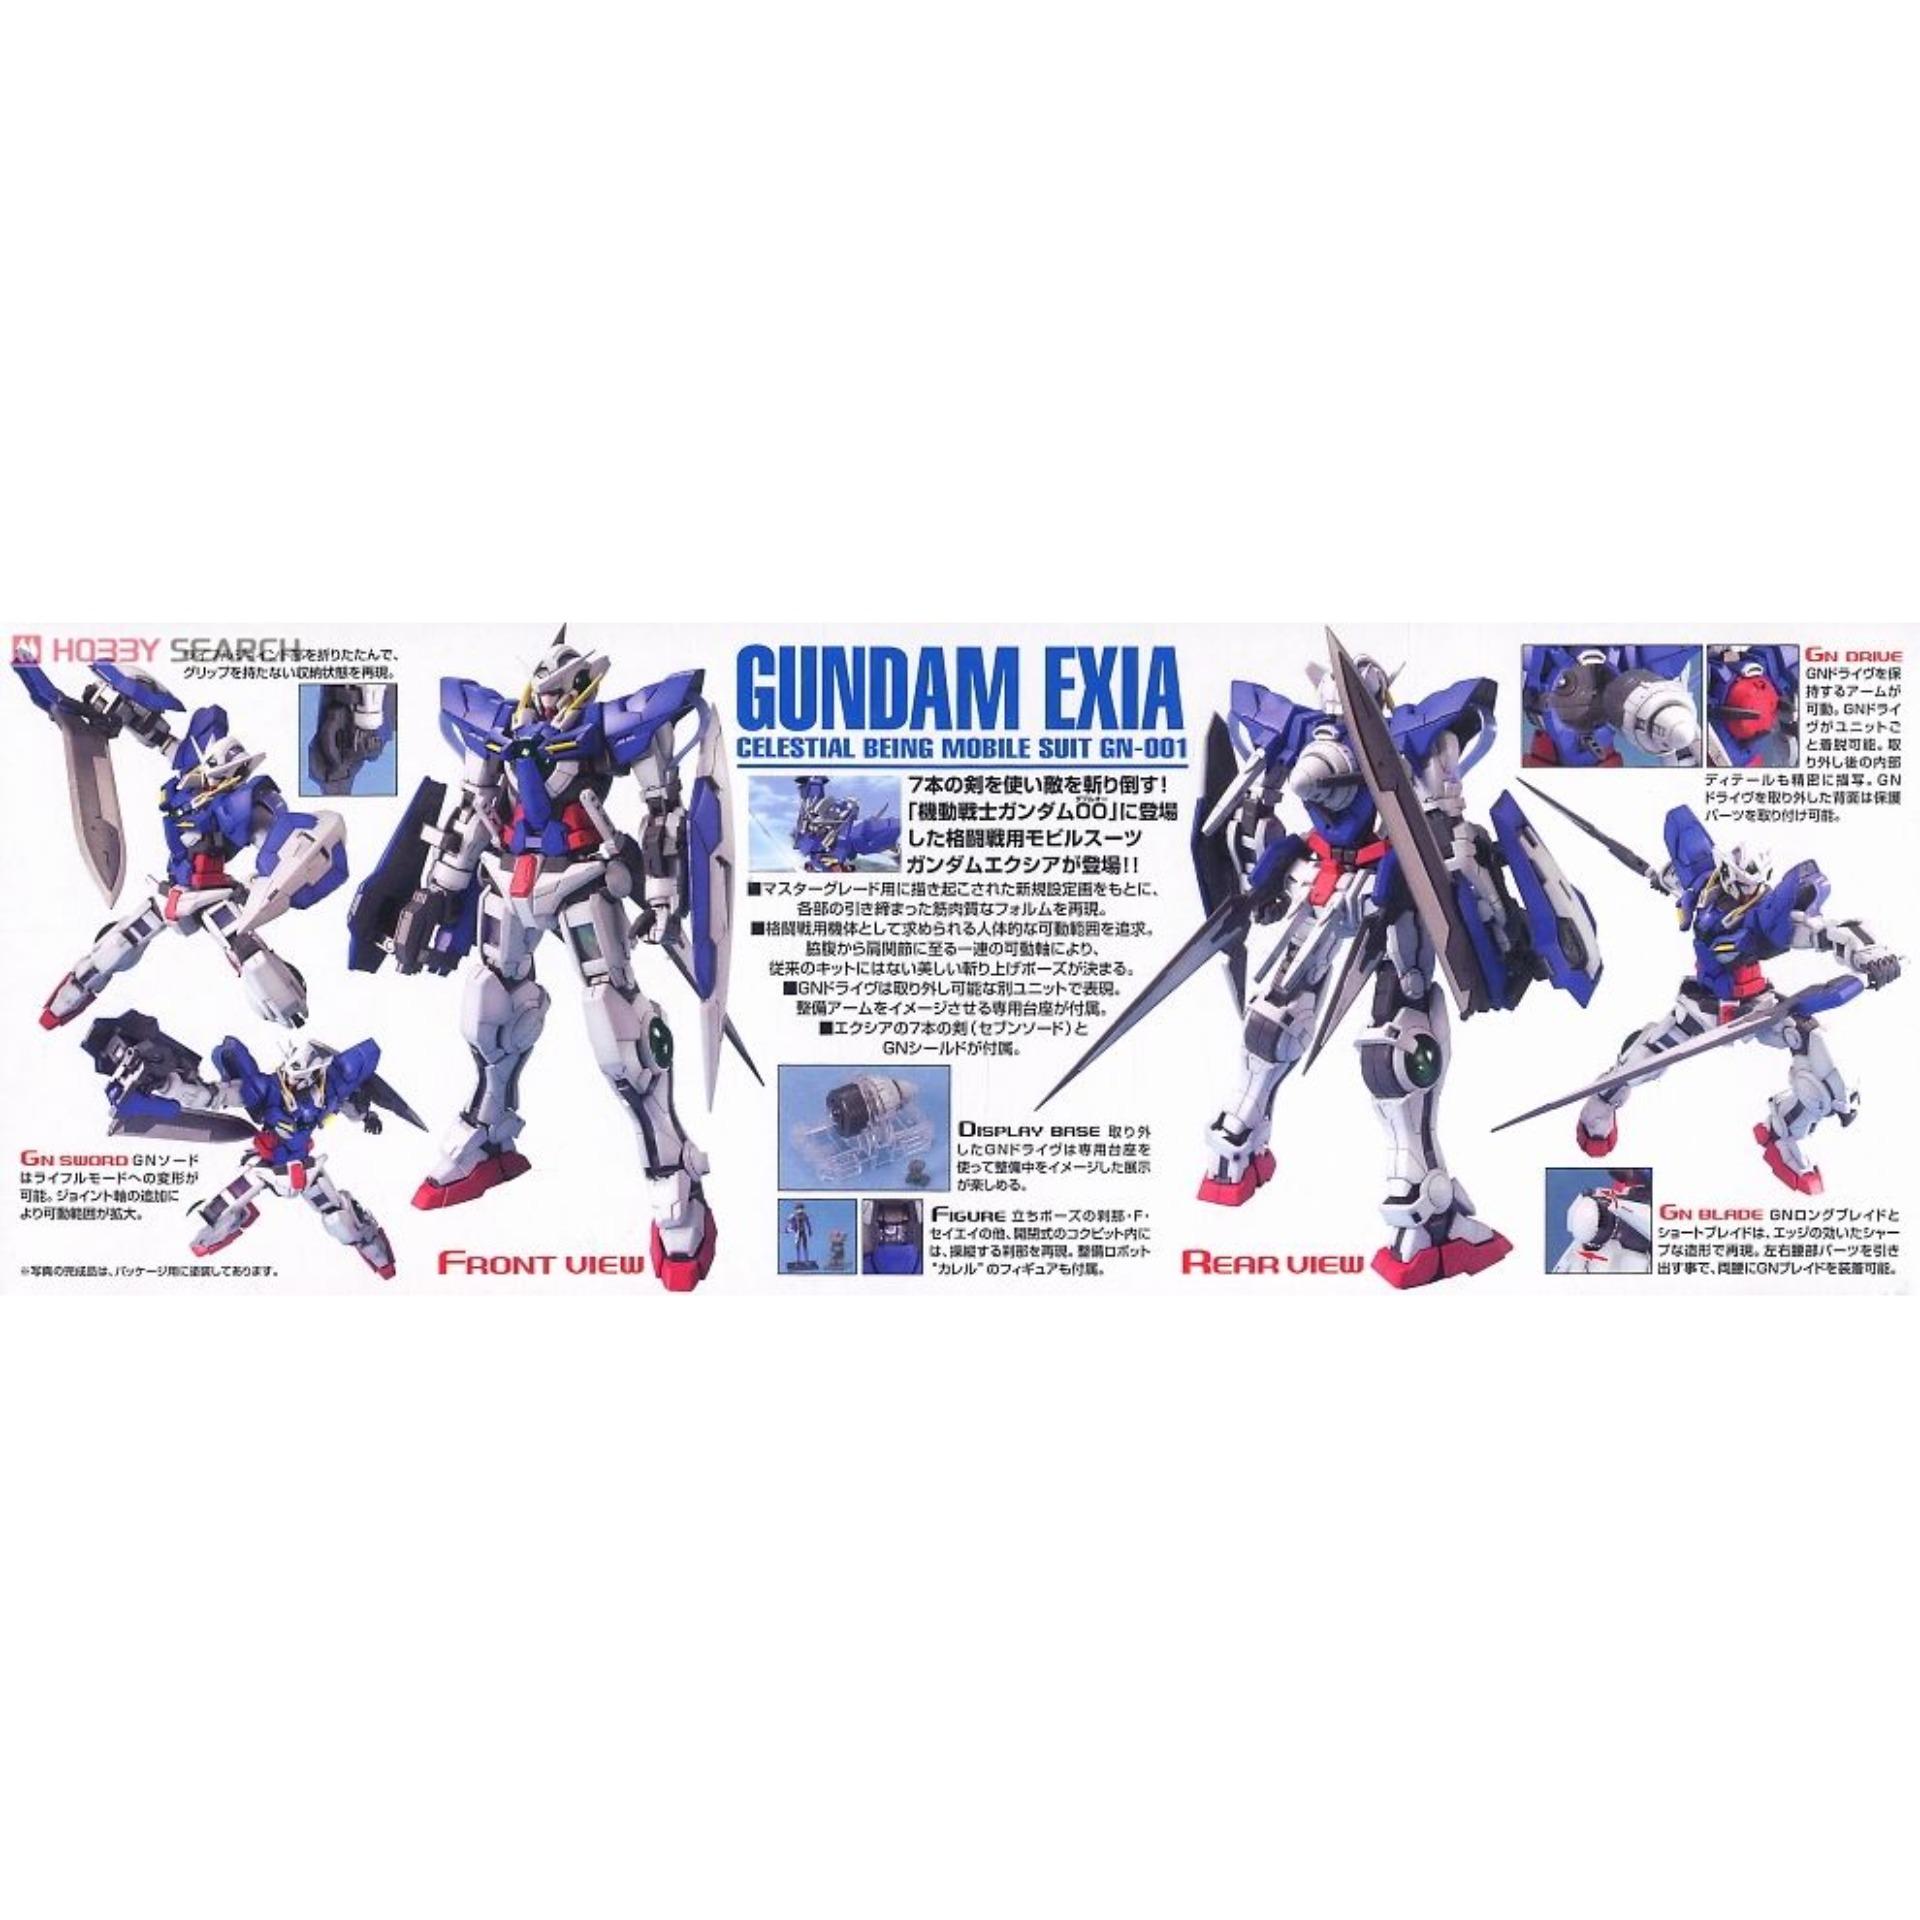 Mô hình Gundam Bandai 1/100 MG GN-001 Gundam Exia Serie MG Gundam 00